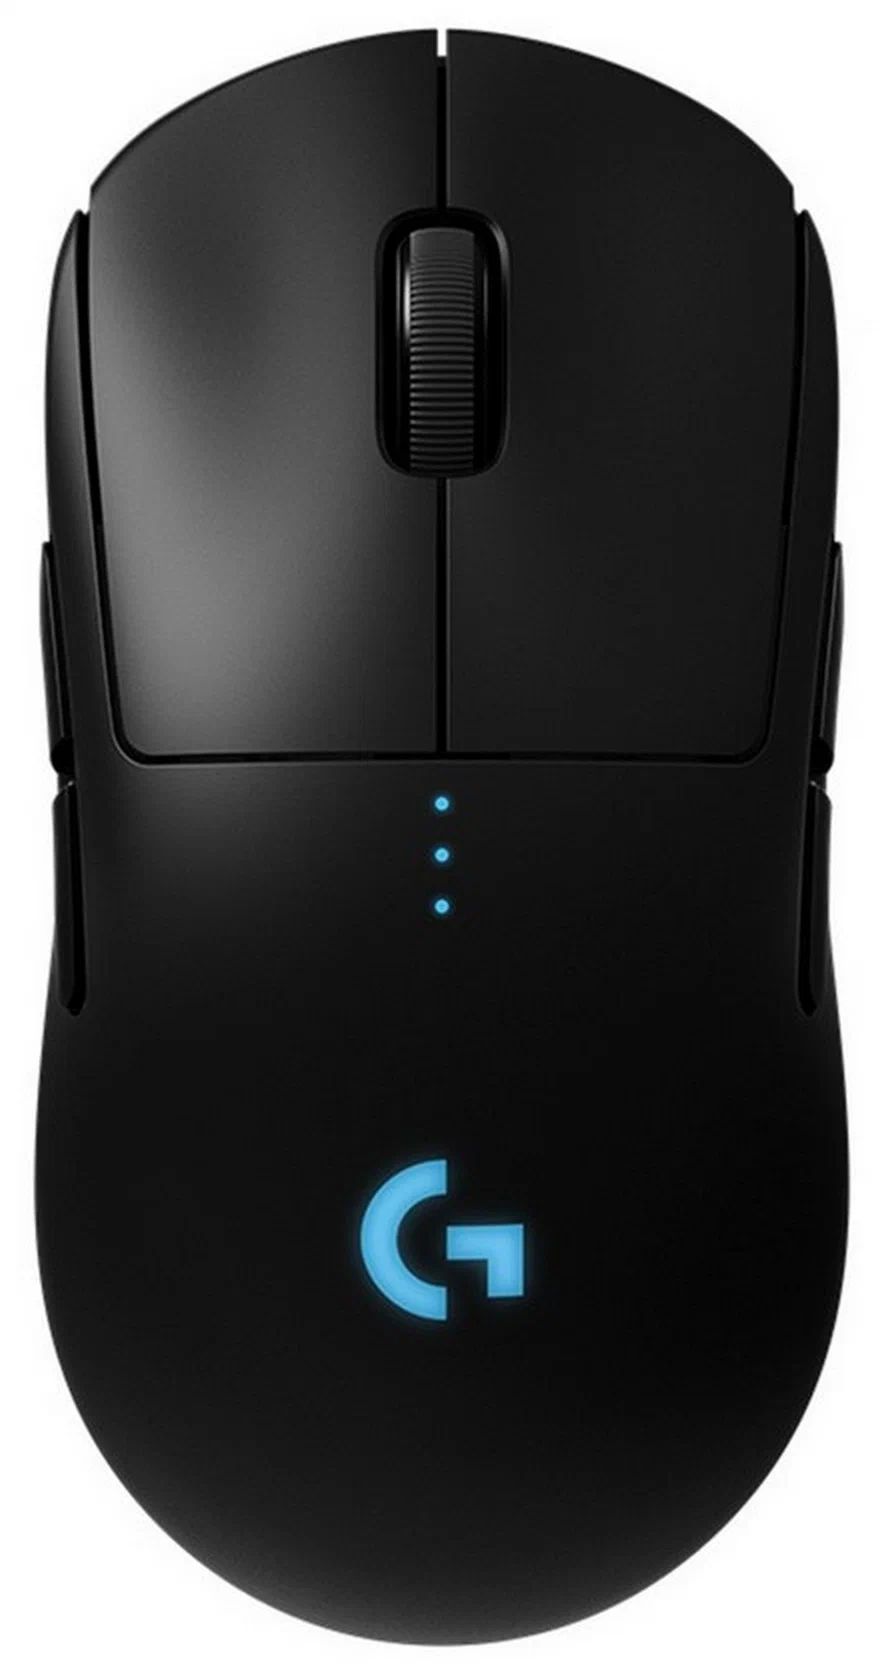 Проводная/беспроводная игровая мышь Logitech Pro Wireless Black (910-005272), купить в Москве, цены в интернет-магазинах на Мегамаркет